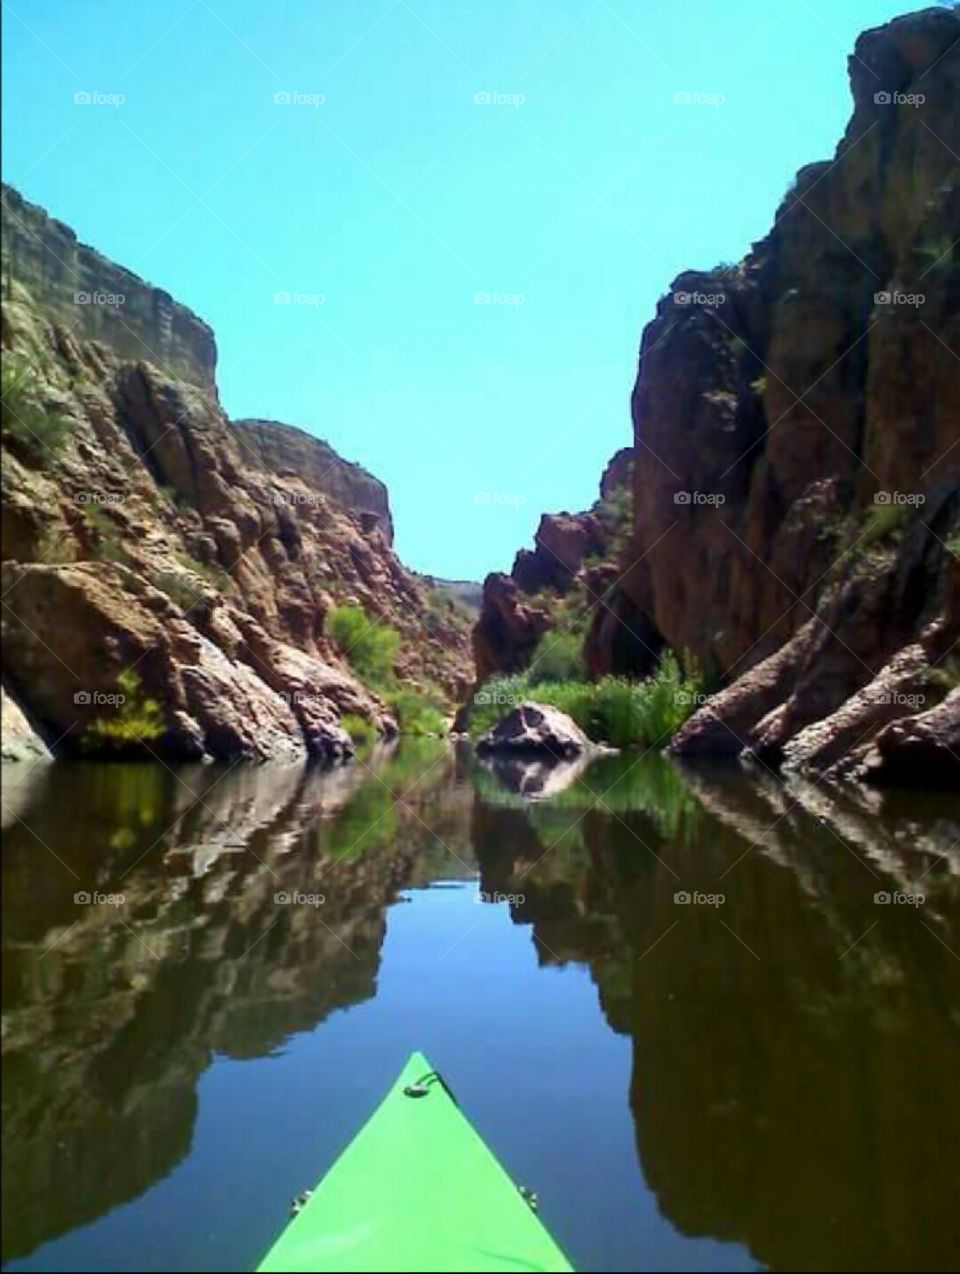 Reflecting on Canyon Lke